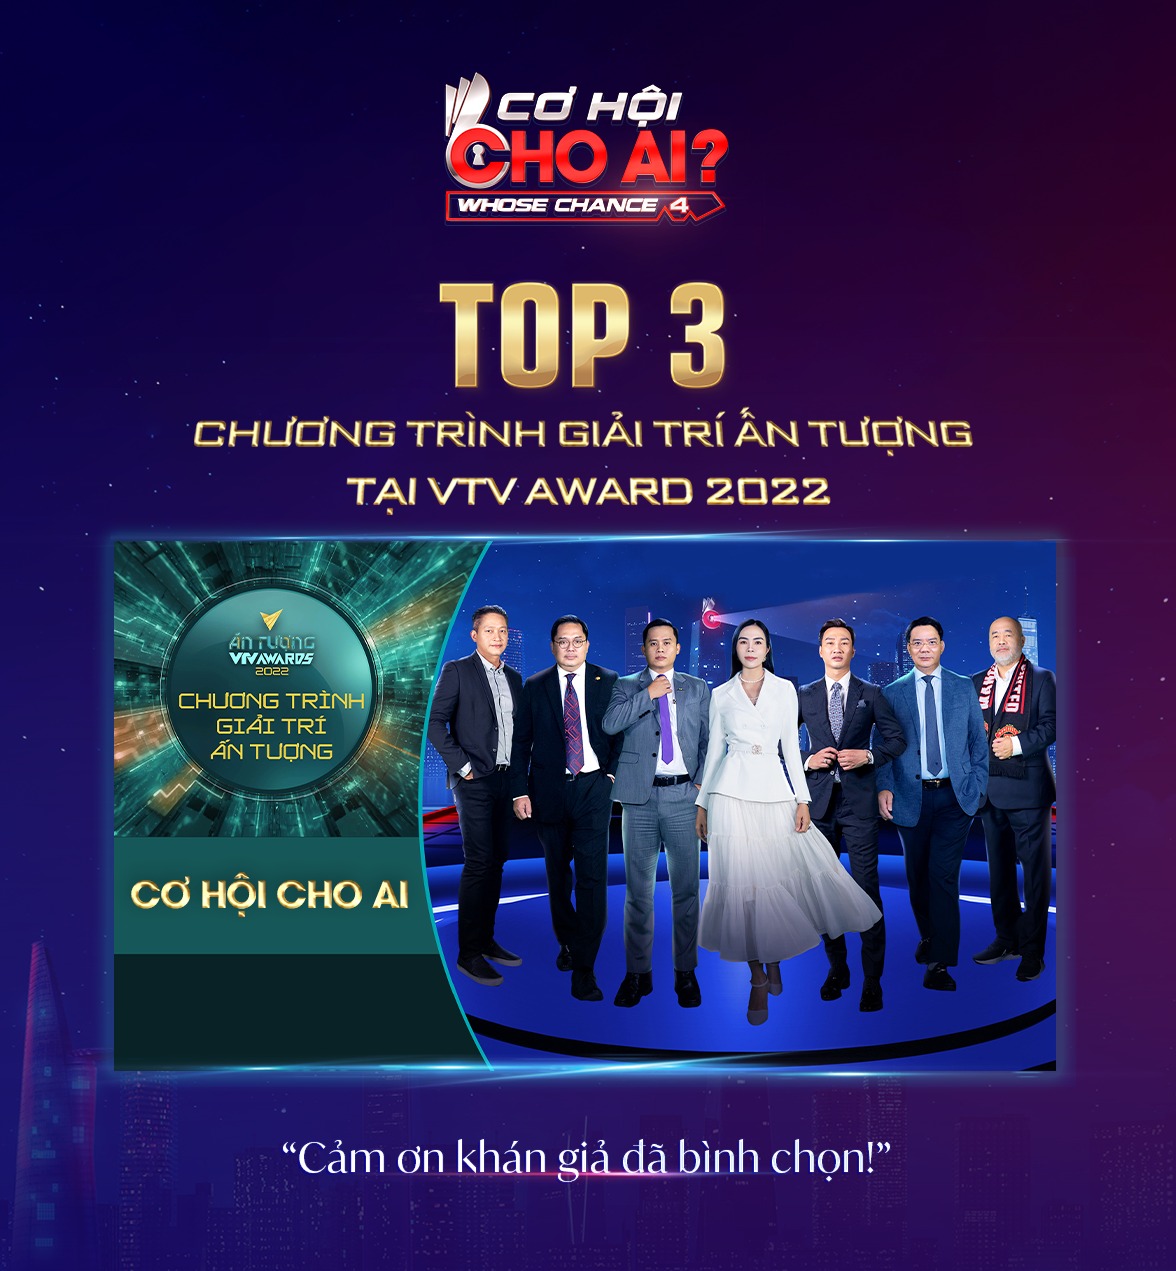 Cơ Hội Cho Ai - Whose Chance Vinh dự lọt Top 3 Hạng mục Chương trình Giải trí ấn tượng tại VTV AWARDS 2022️